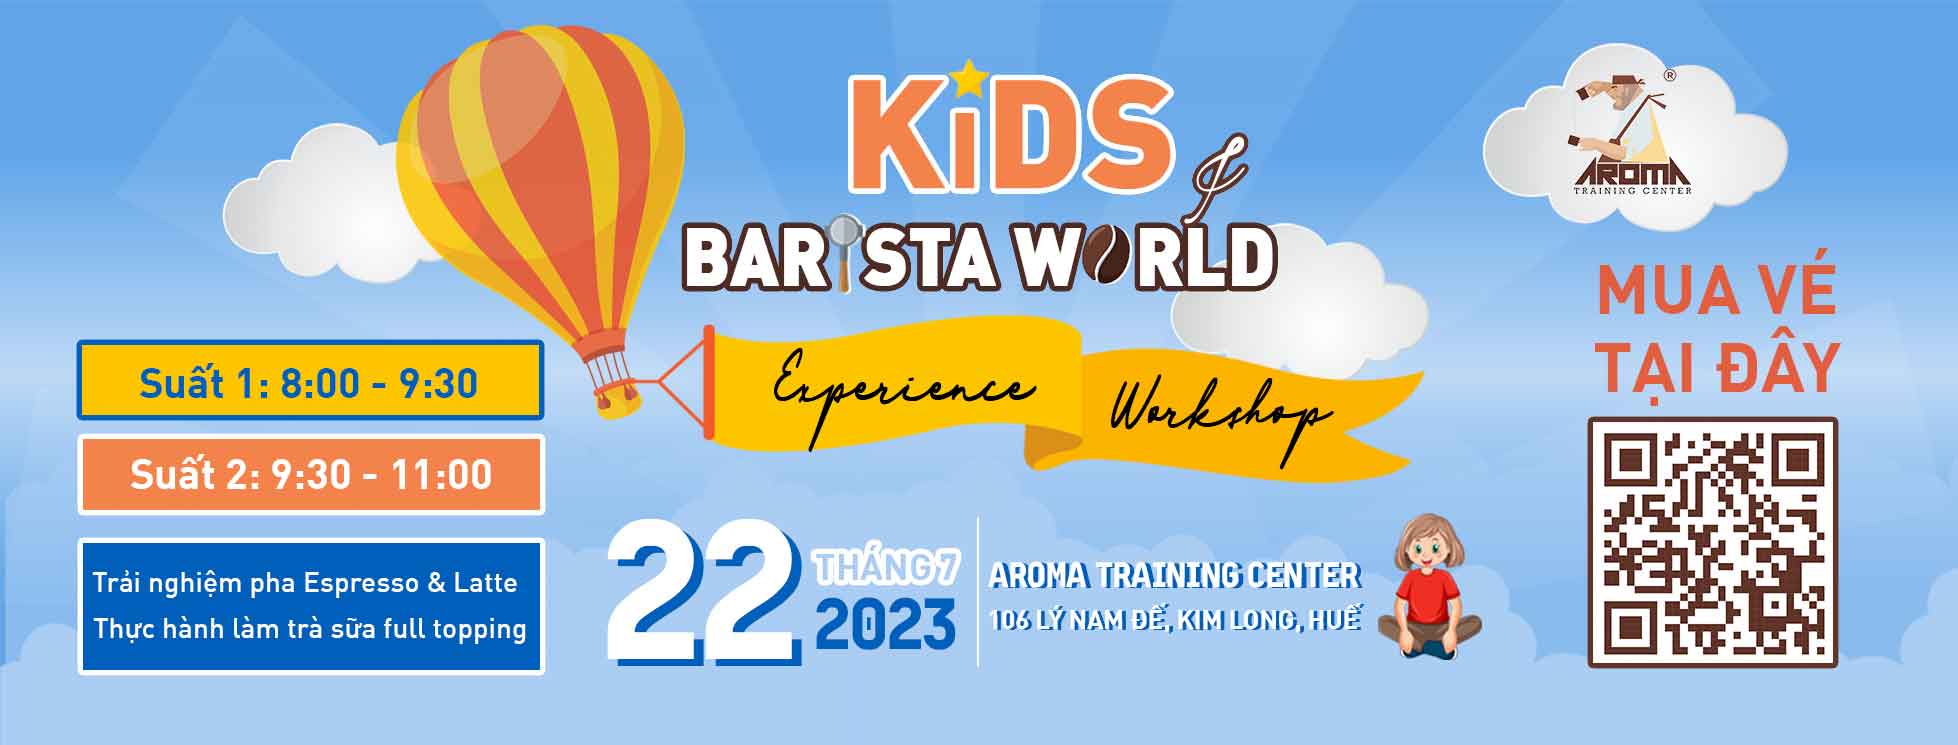 KIDS & BARISTA WORLD - Experience Workshop